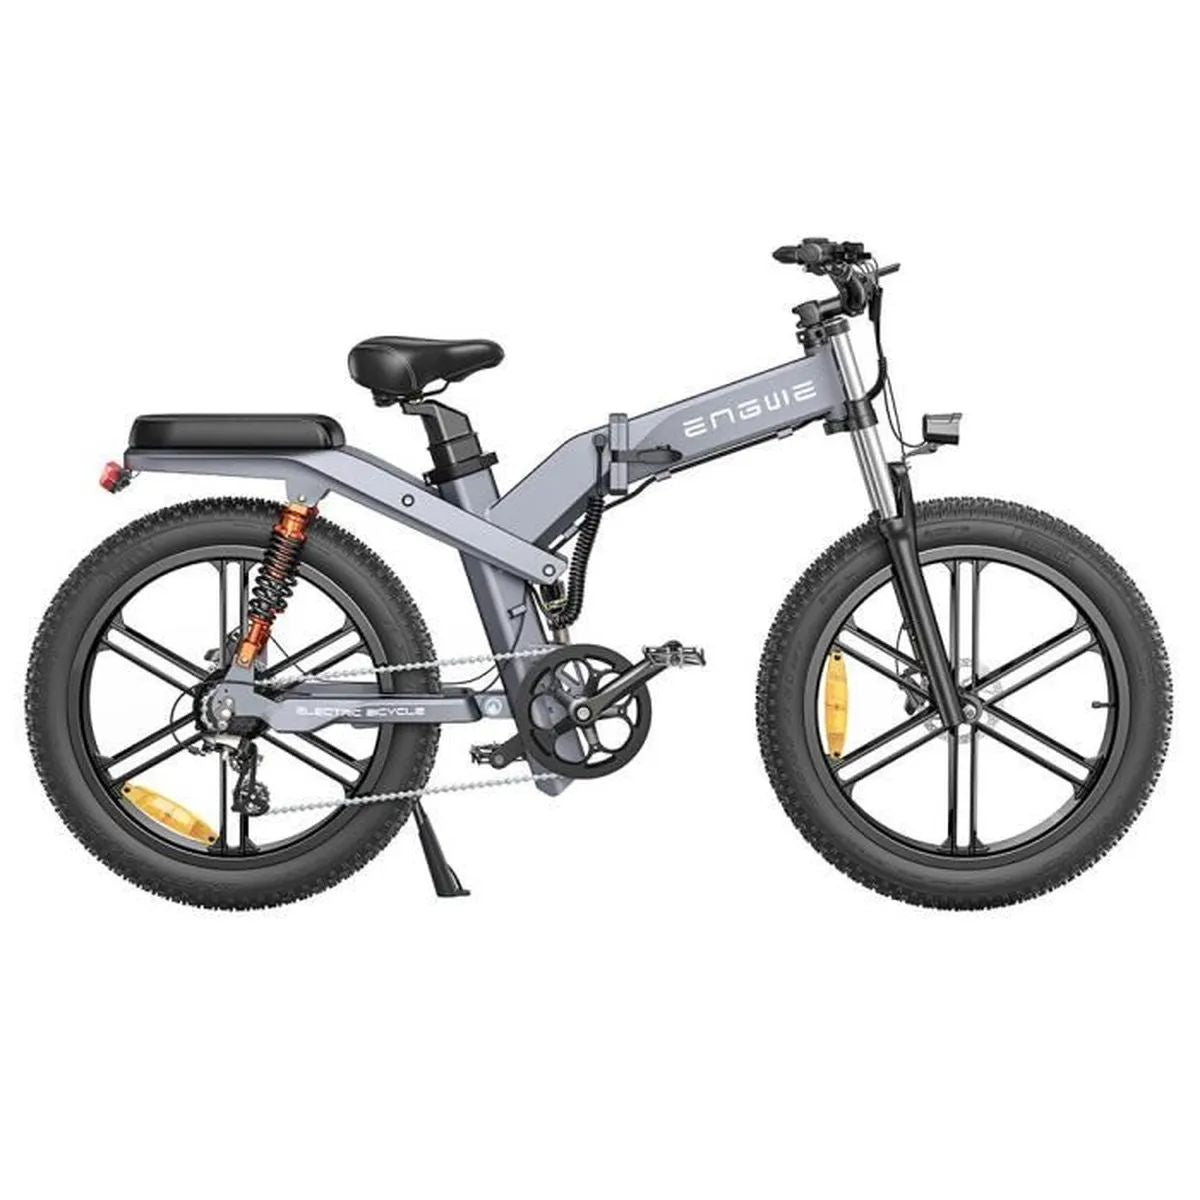 ENGWE X26 19.2AH - Potente bicicleta elétrica | Autonomia de 90KM | Disco de freio | Cor cinza